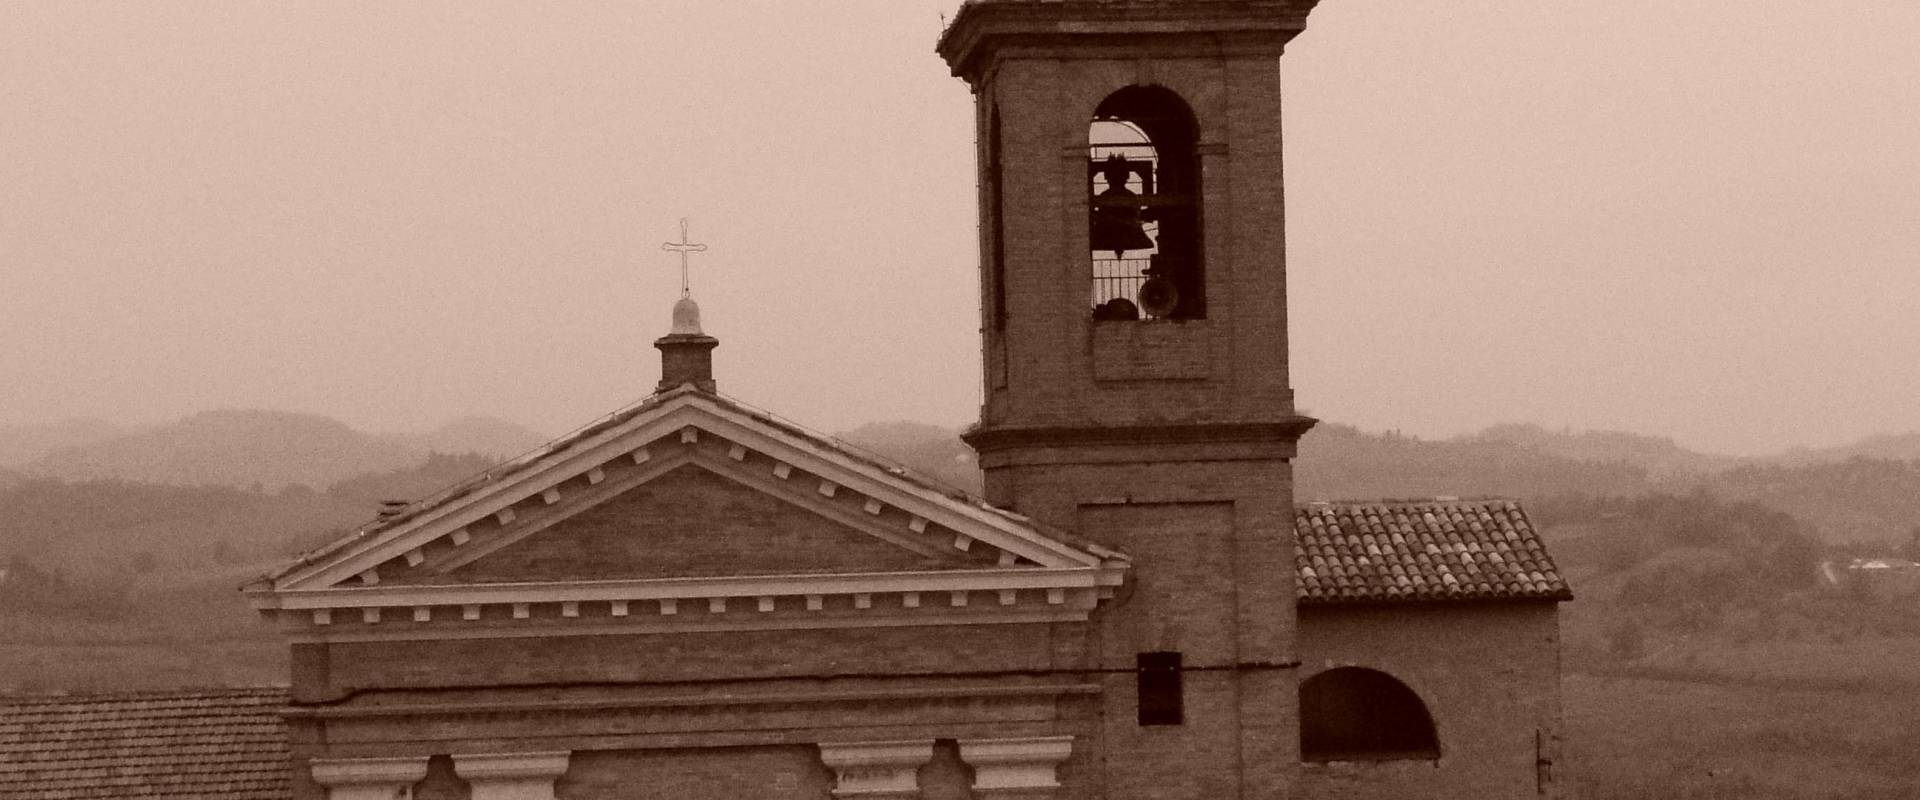 Chiesa Parrocchiale &quot;Sant'Agata&quot; photo by Giovanni1984